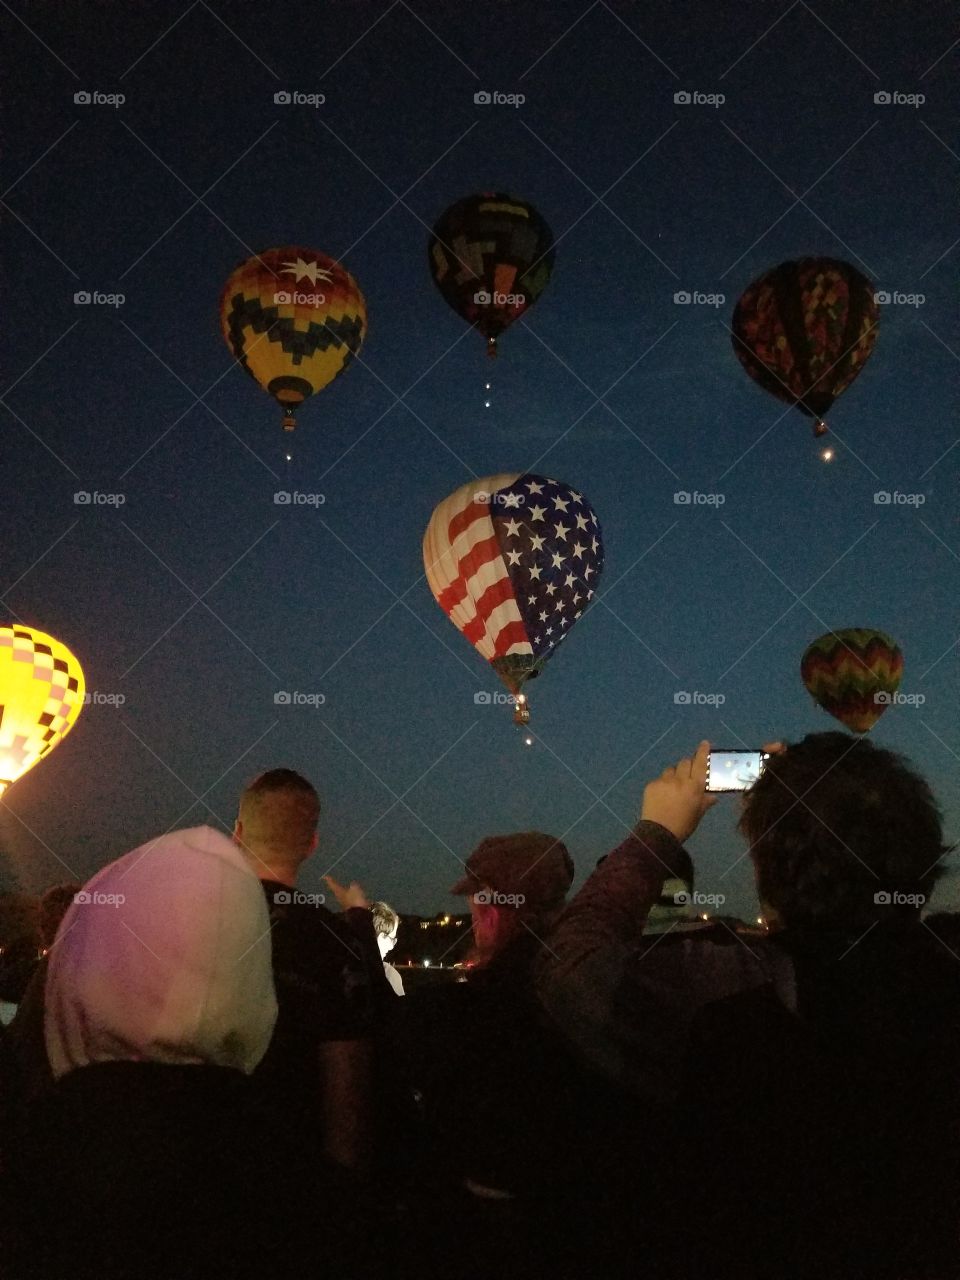 Dawn patrol at the hot air balloon races in Reno, NV